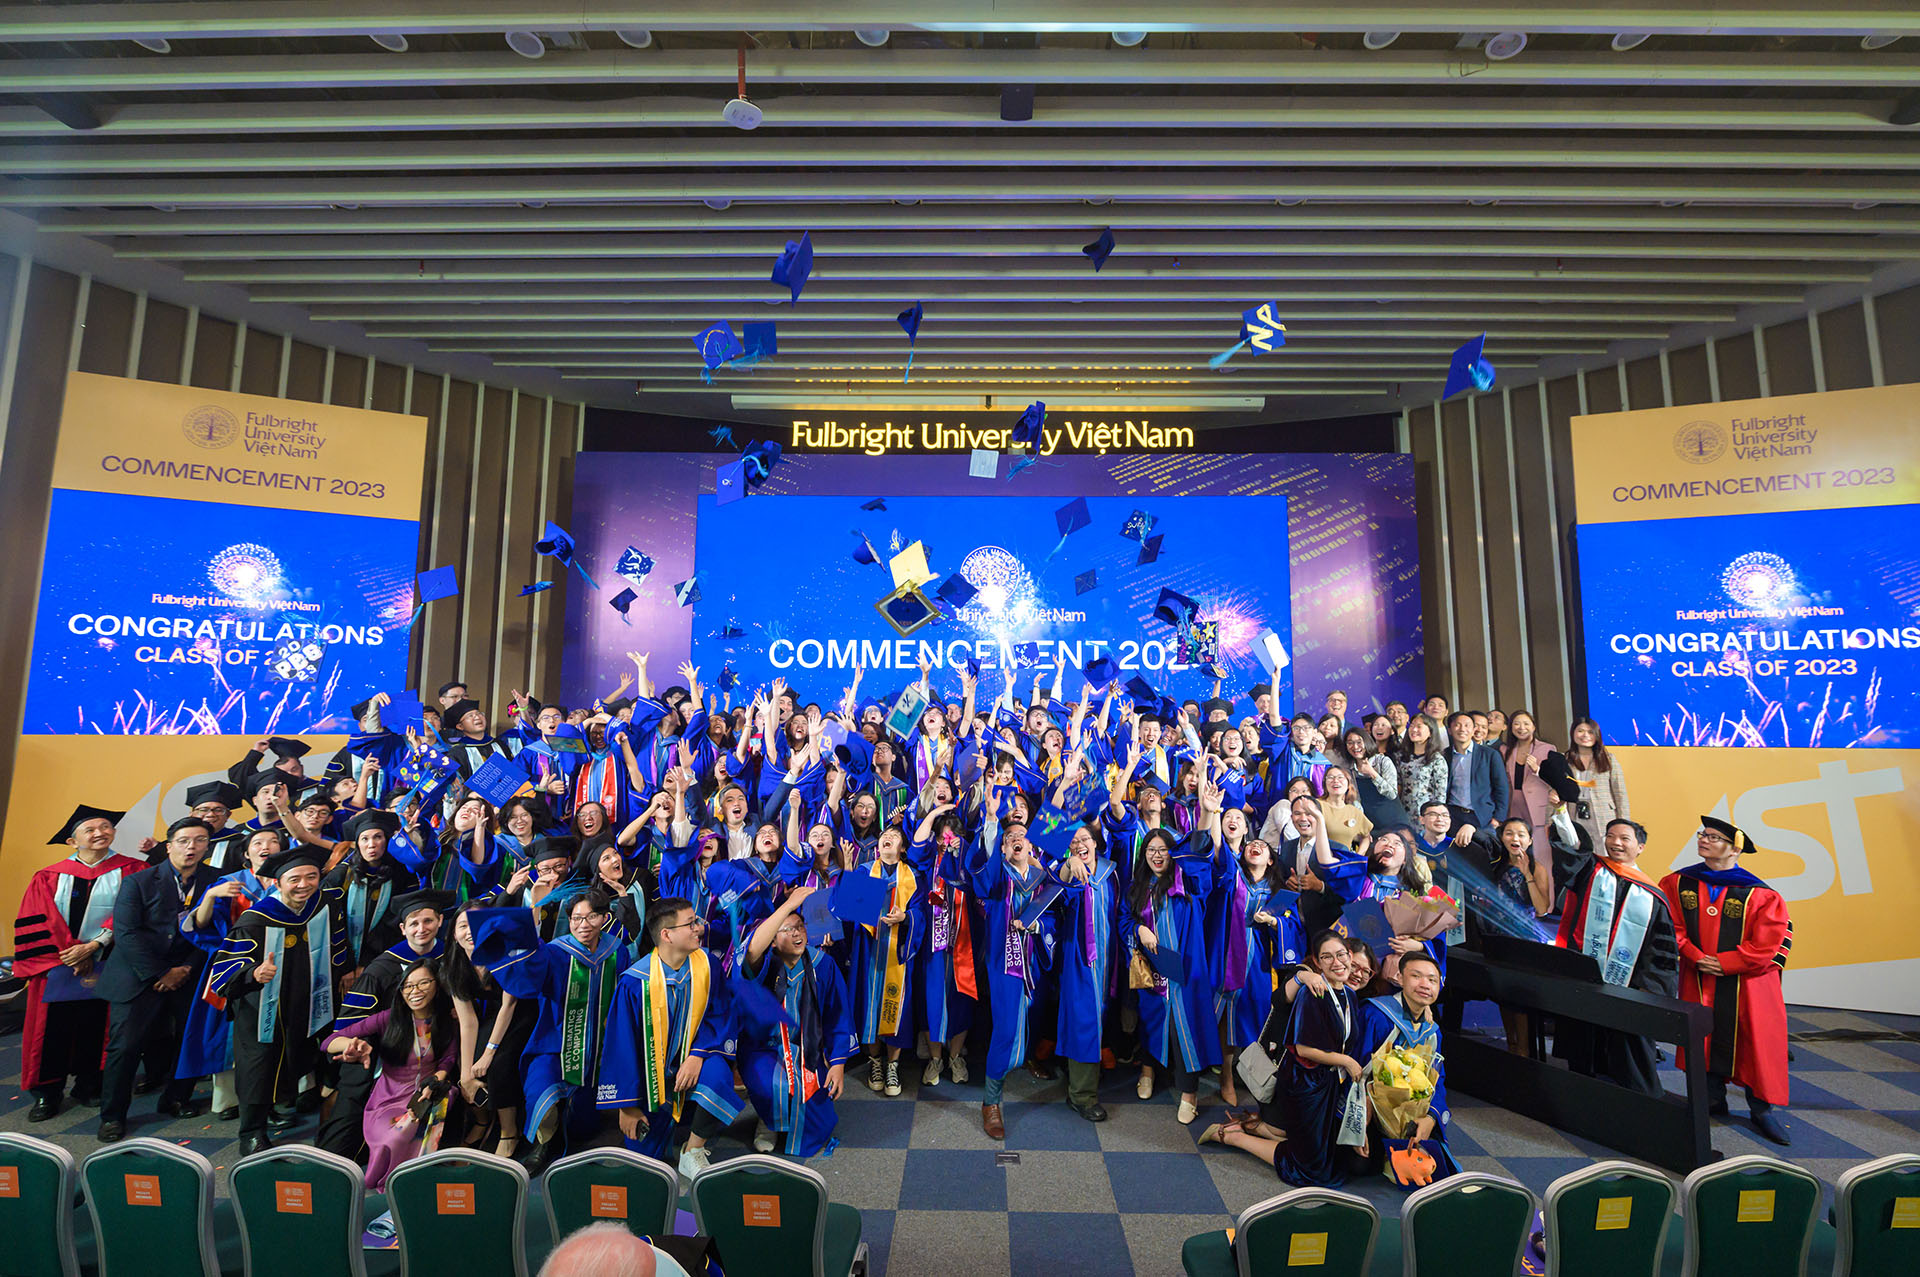 Mô hình giáo dục khai phóng tại Trường Đại học Fulbright Việt Nam